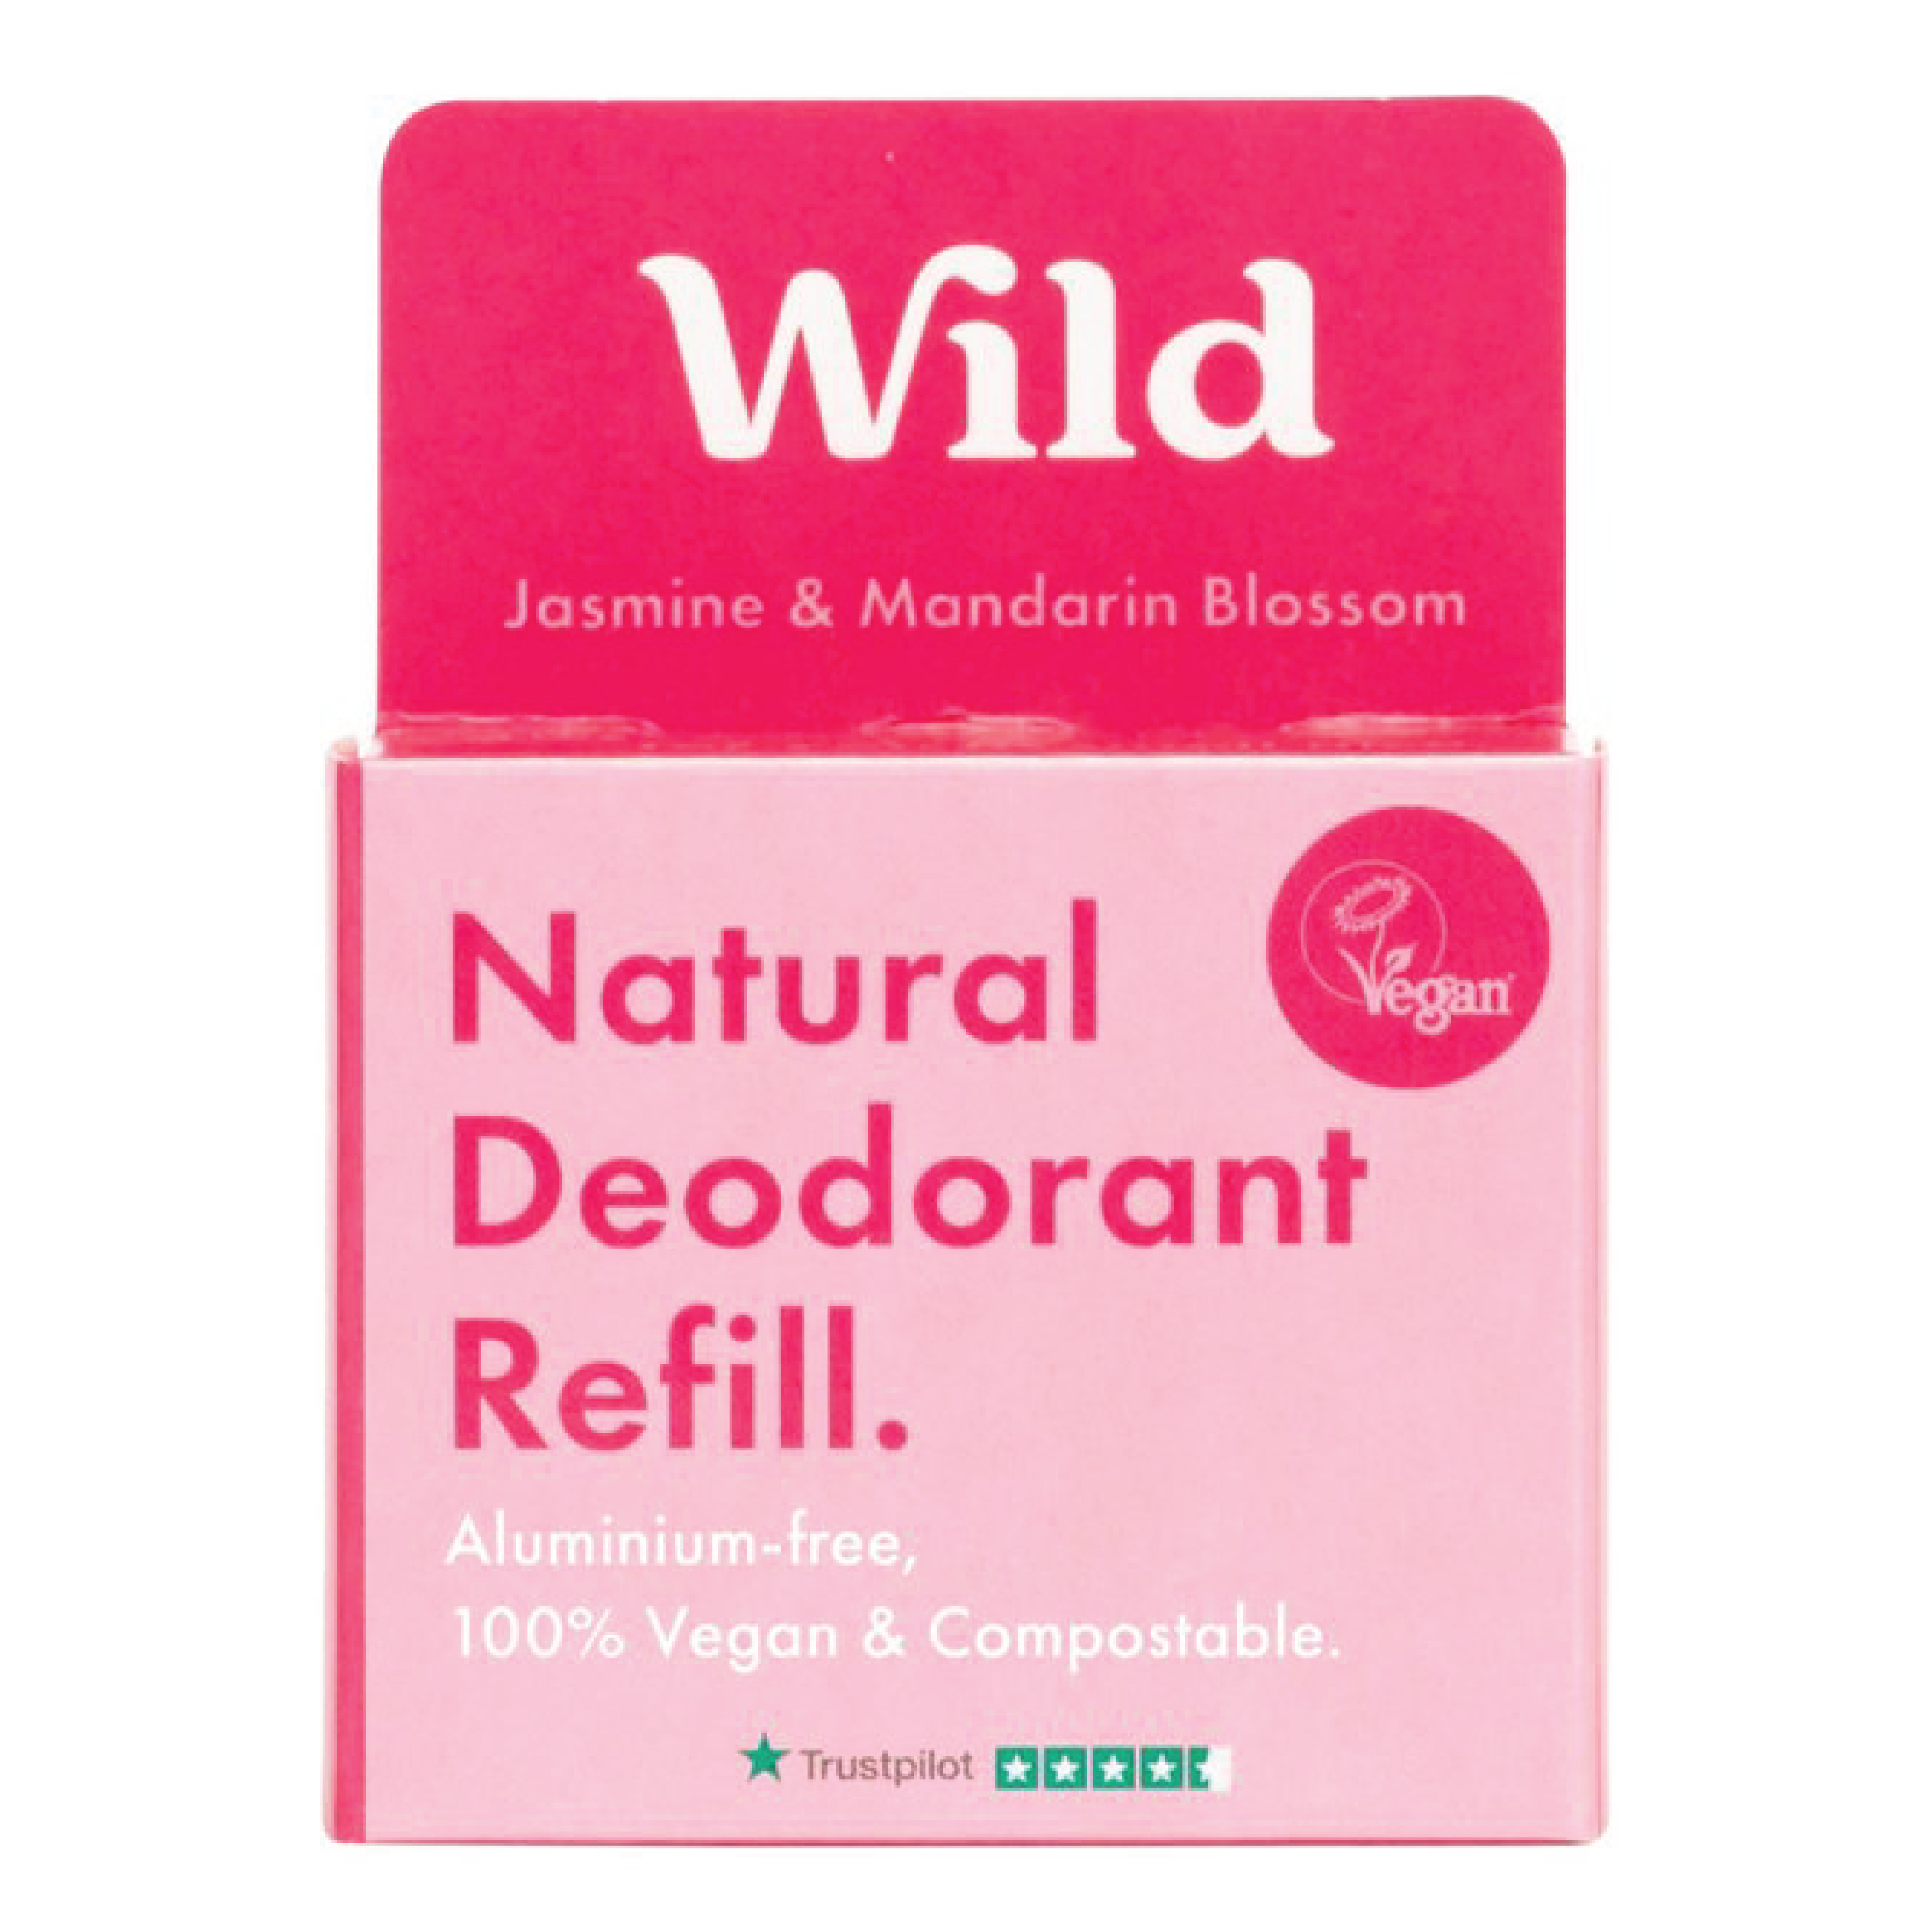 Wild Wild Deo Jasmine & Mandarin Blossom refill, 40 gram